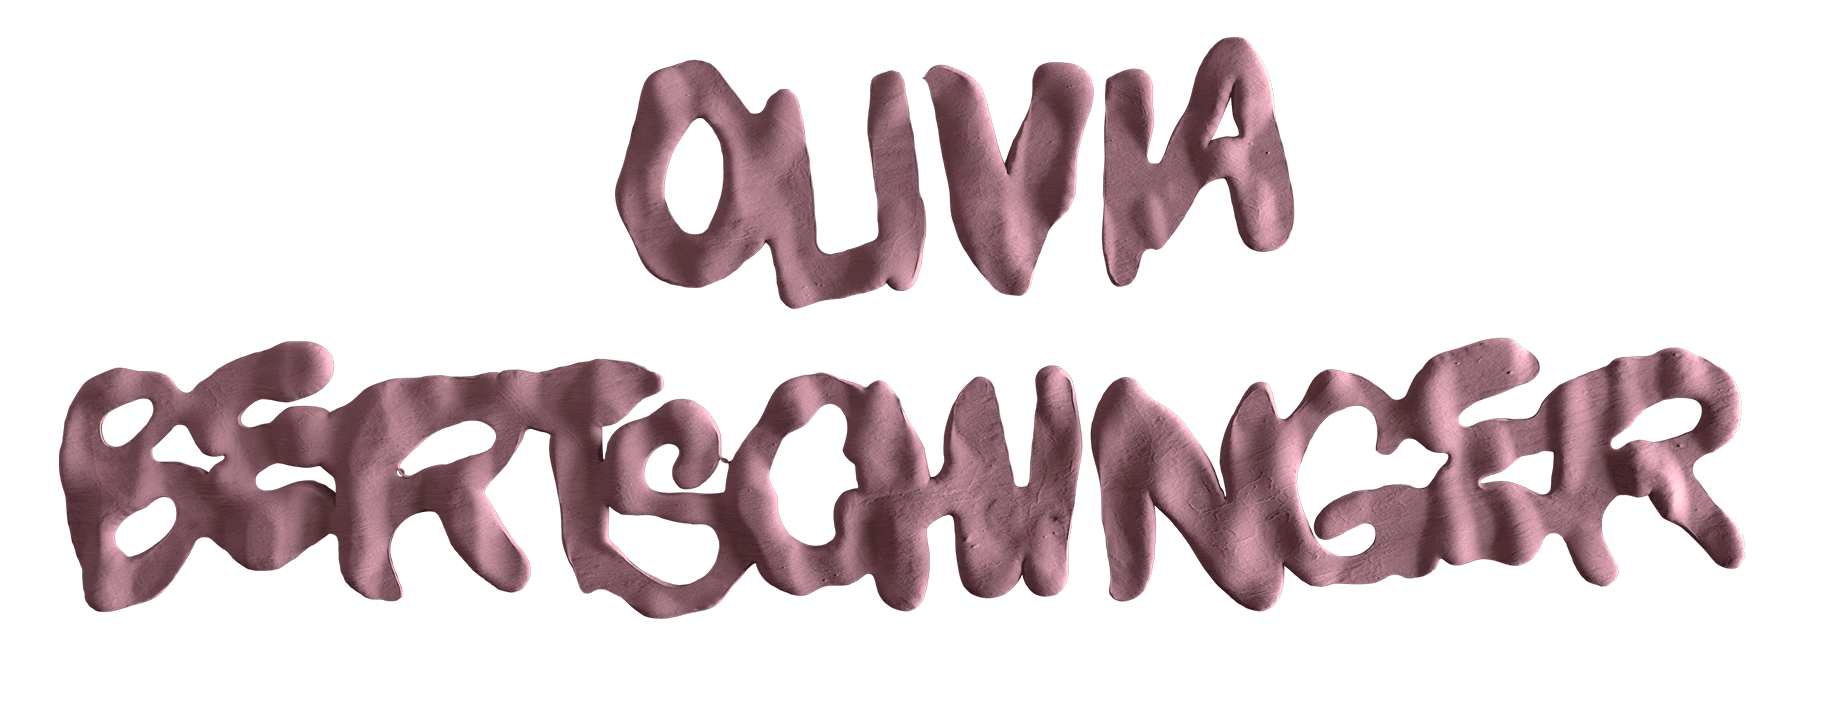 Olivia Bertschinger